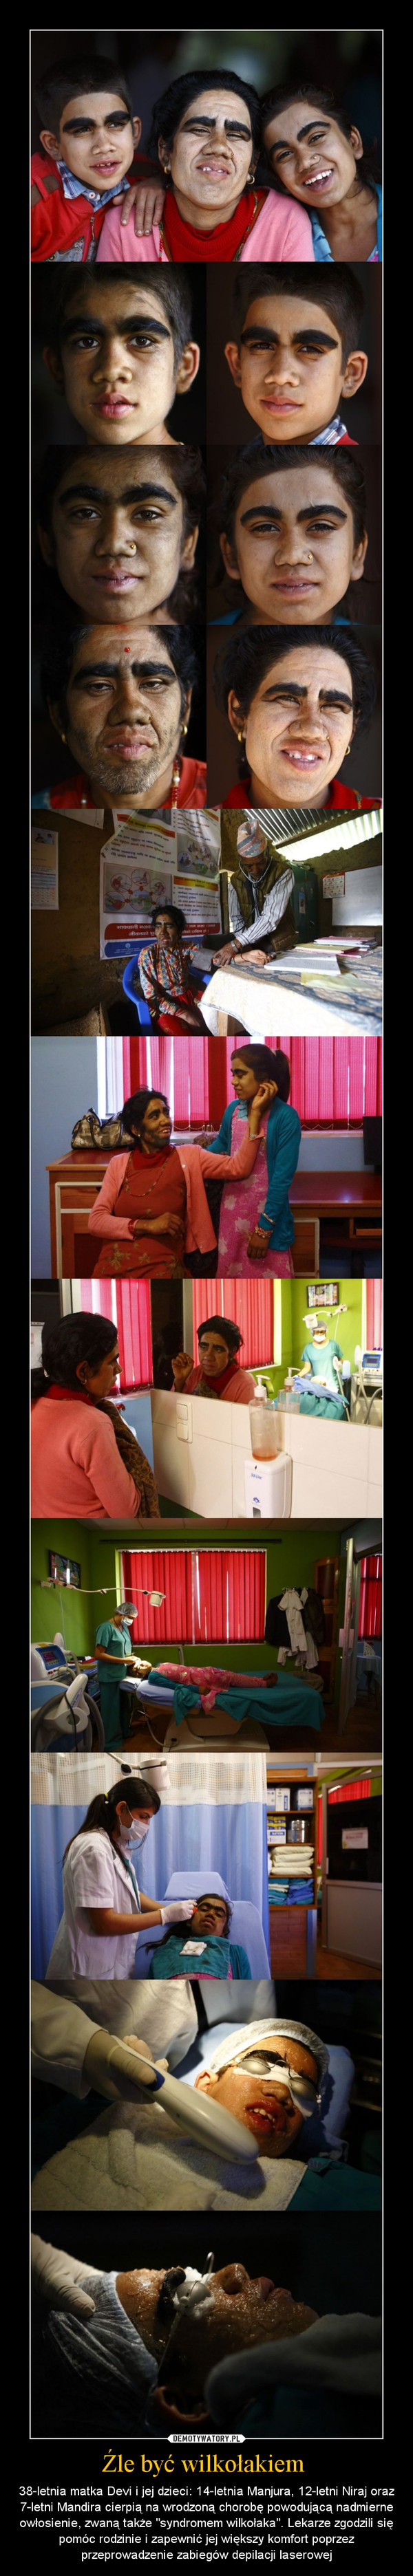 Źle być wilkołakiem  – 38-letnia matka Devi i jej dzieci: 14-letnia Manjura, 12-letni Niraj oraz 7-letni Mandira cierpią na wrodzoną chorobę powodującą nadmierne owłosienie, zwaną także "syndromem wilkołaka". Lekarze zgodzili się pomóc rodzinie i zapewnić jej większy komfort poprzez przeprowadzenie zabiegów depilacji laserowej 